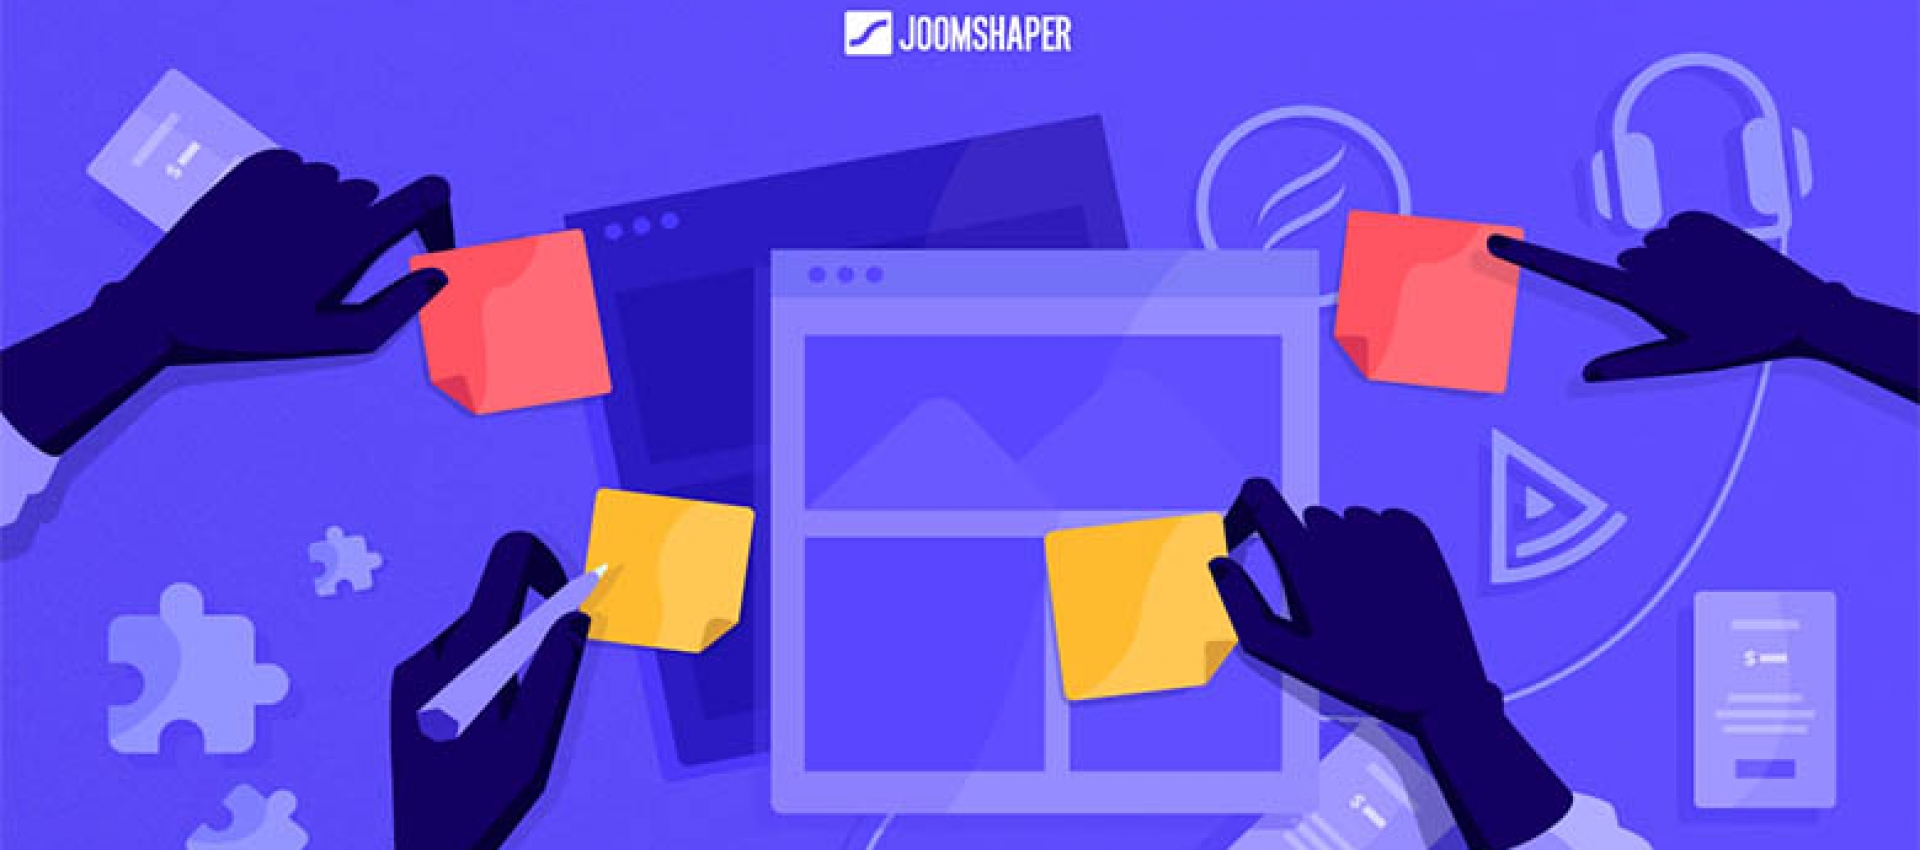 JoomShaper 2019 Yılı İçin Planlarını Açıkladı